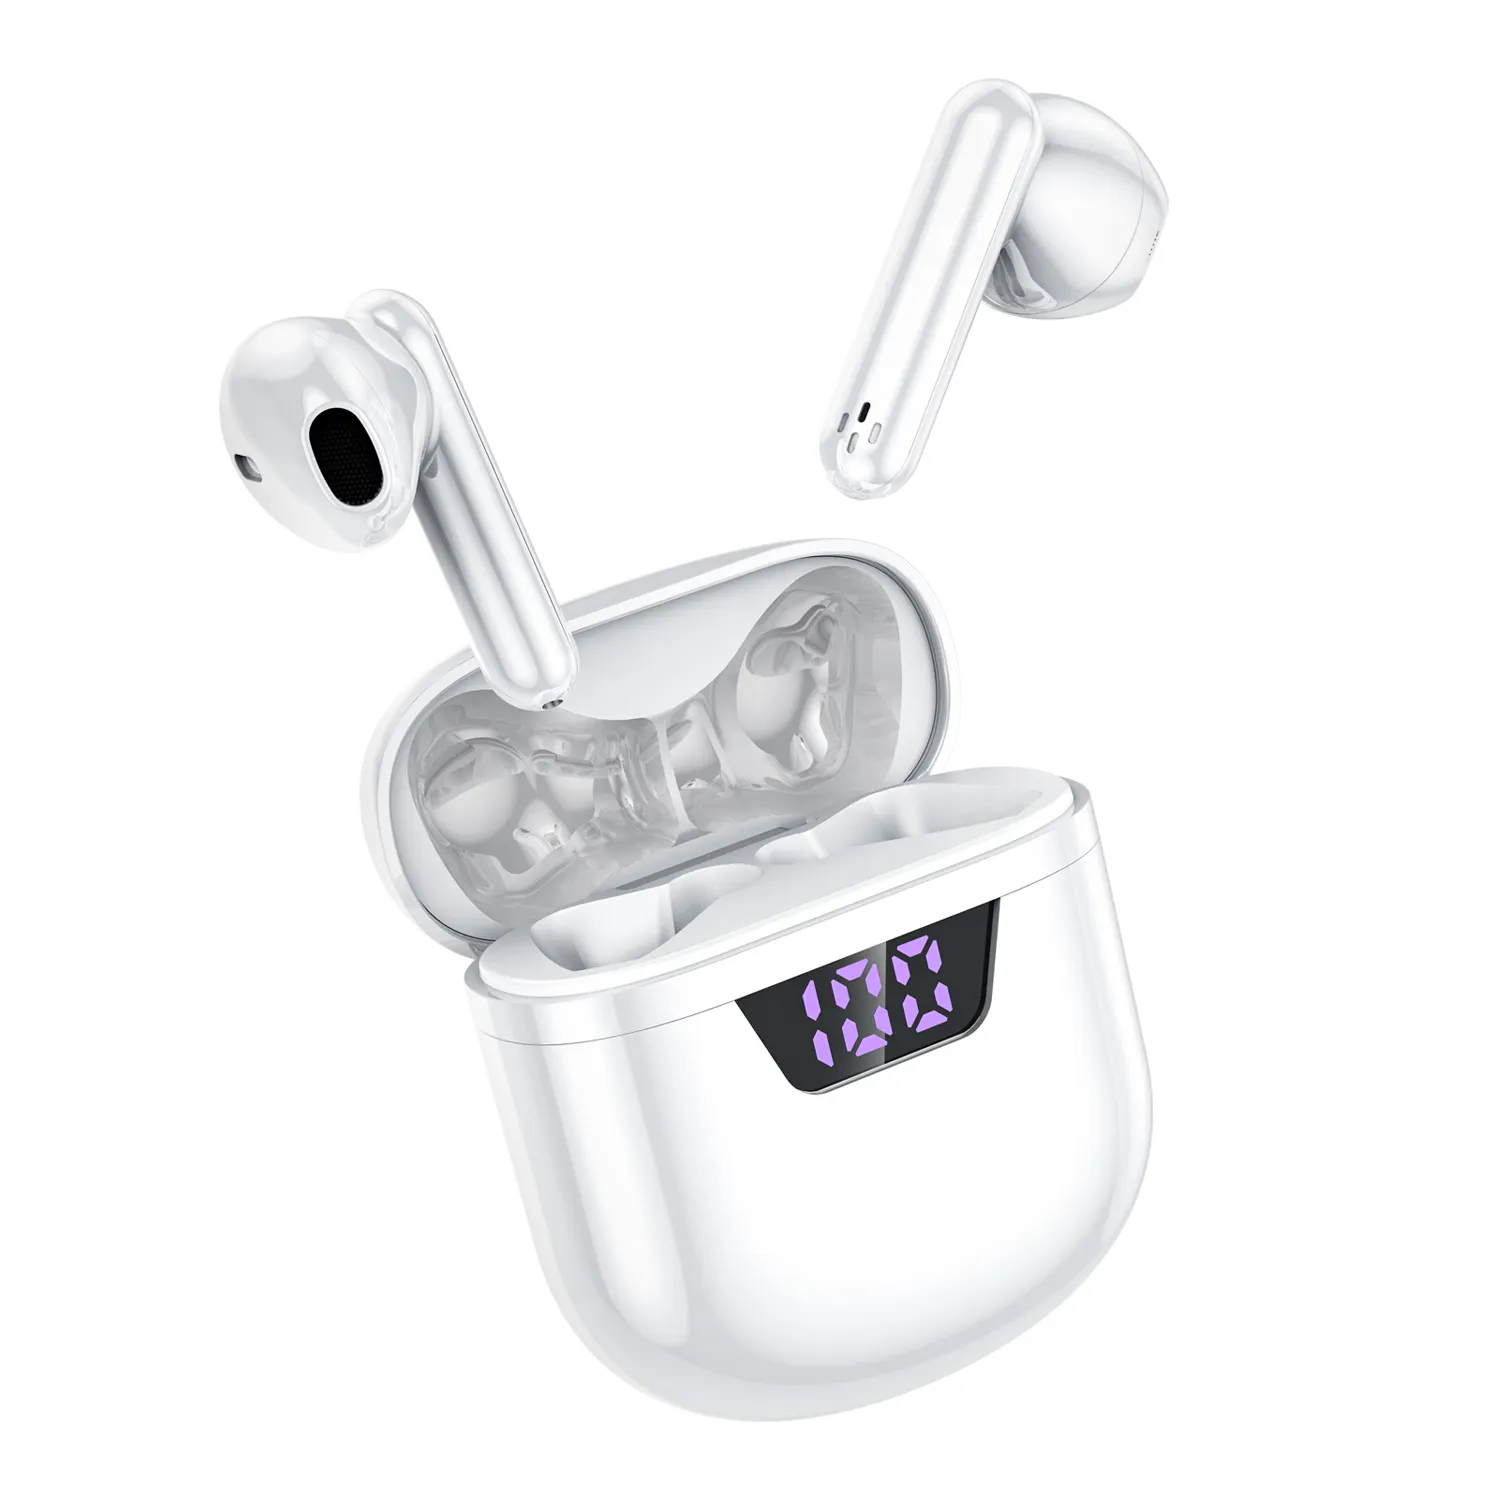 Vfan T09 m10 Tws Earbuds In-ear Headphone Stereo Wireless Headset